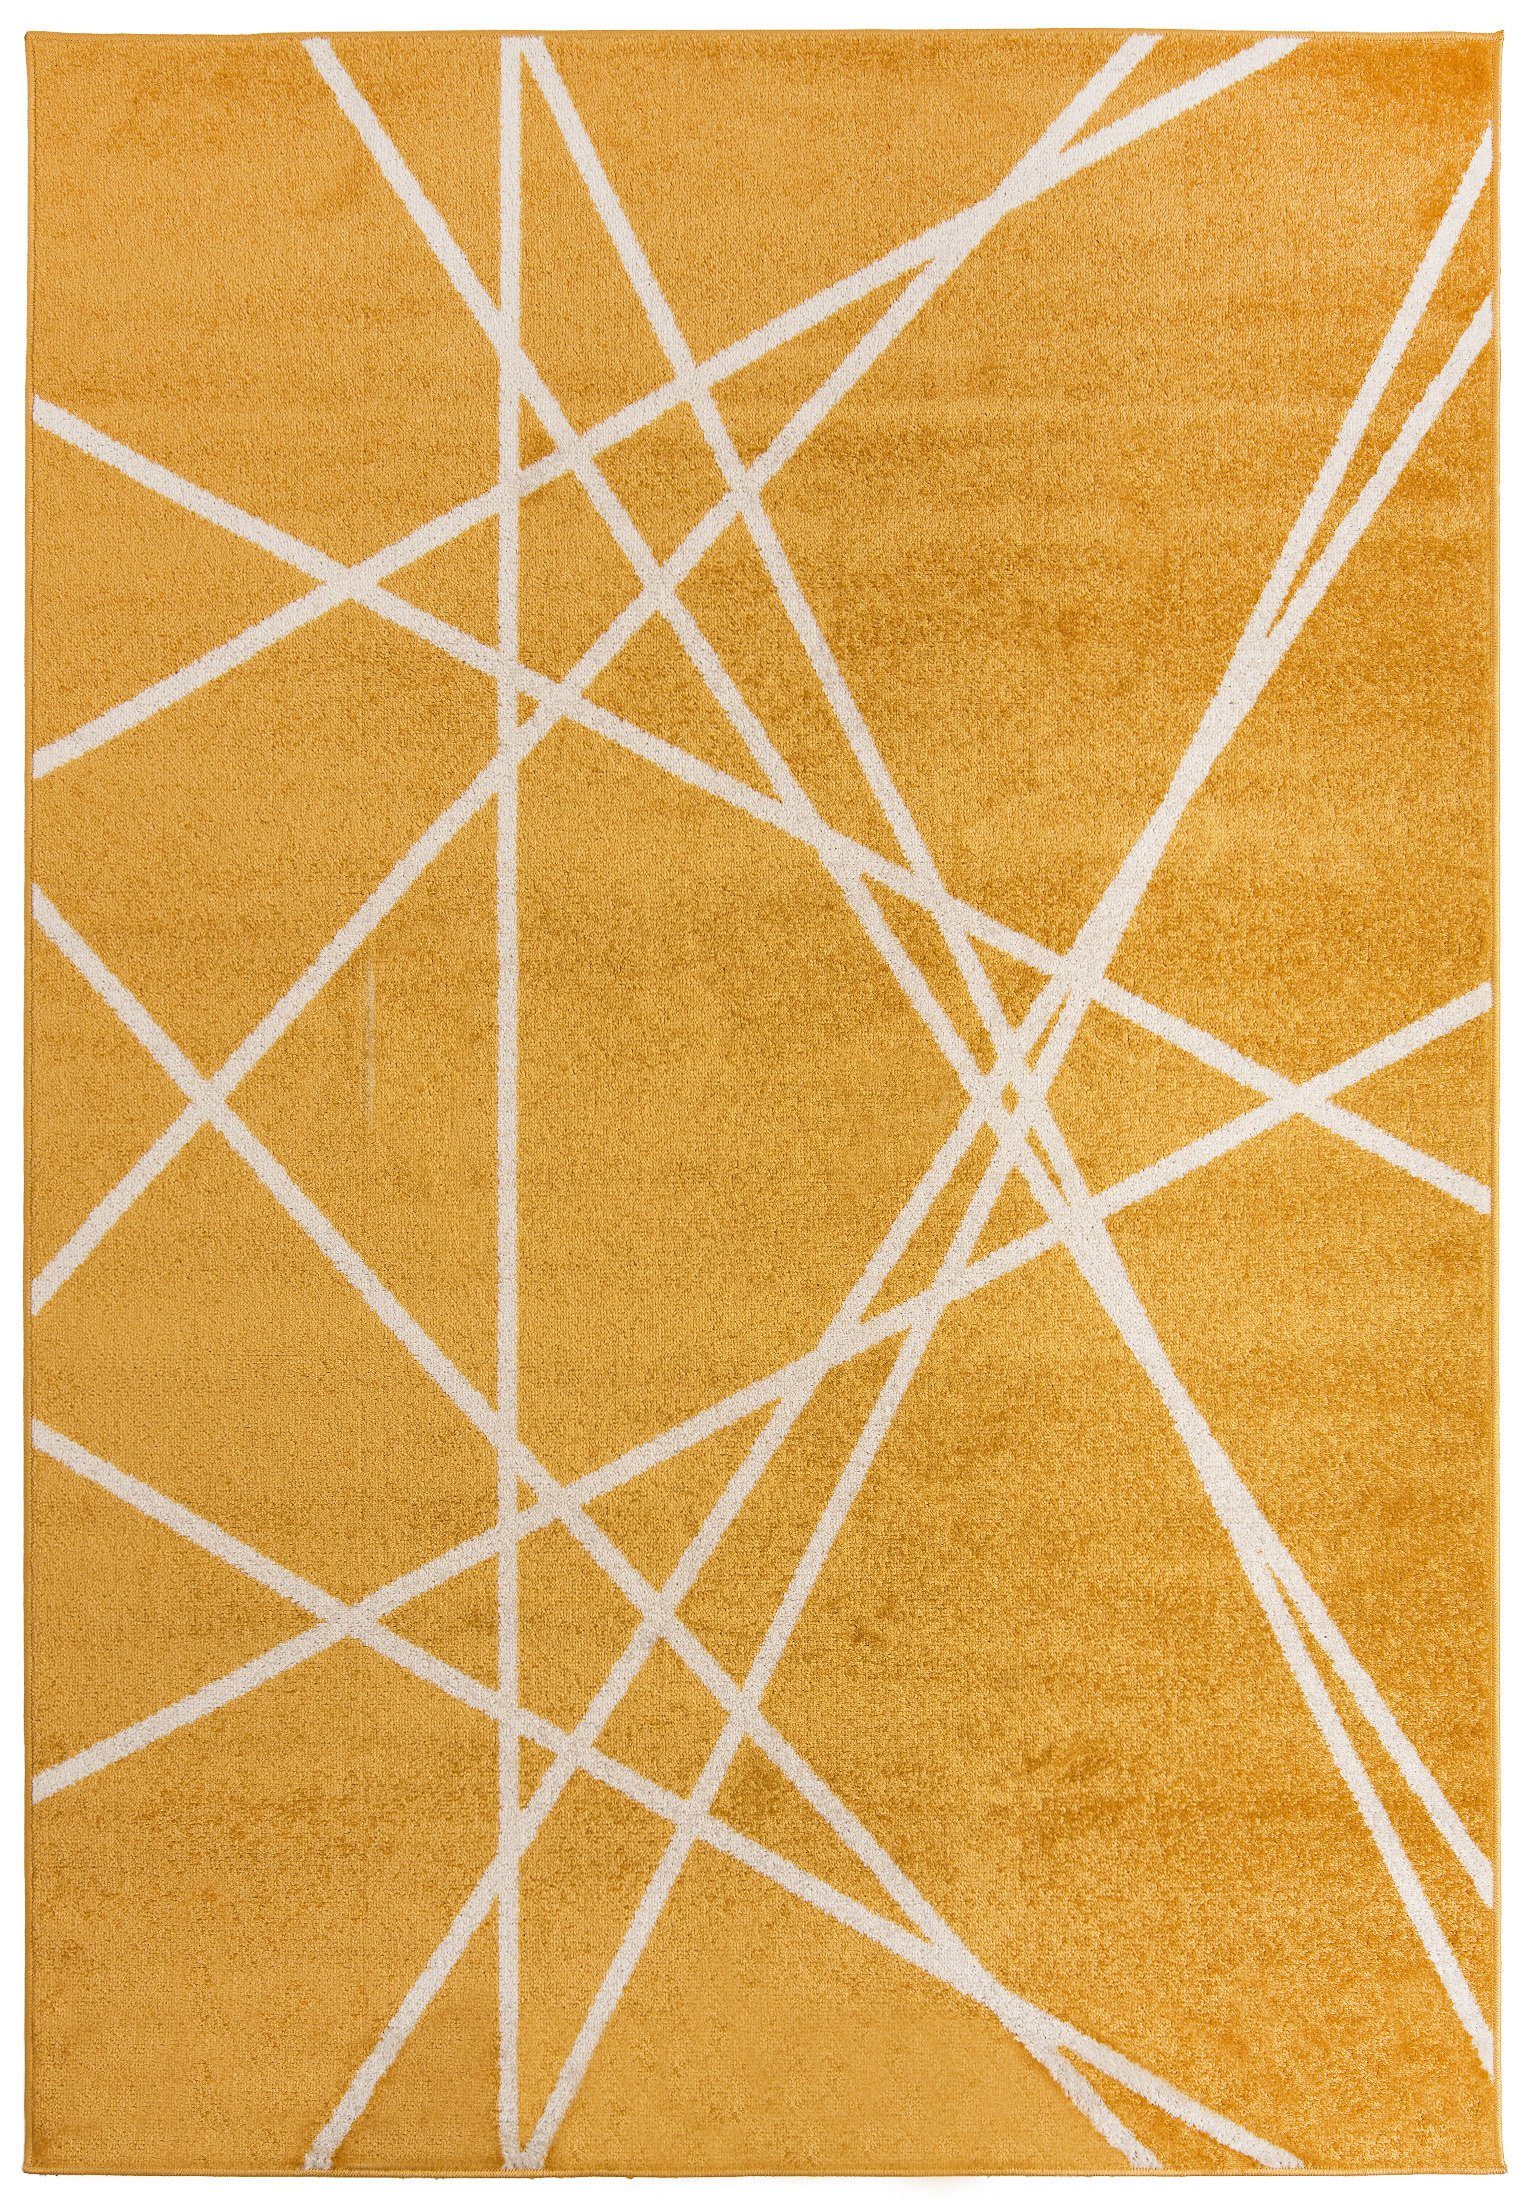 Designteppich Modern Teppich Geometrisch Muster Gelb farbe - Kurzflor, Mazovia, 250 x 350 cm, Geeignet für Fußbodenheizung, Höhe 7 mm, Kurzflor